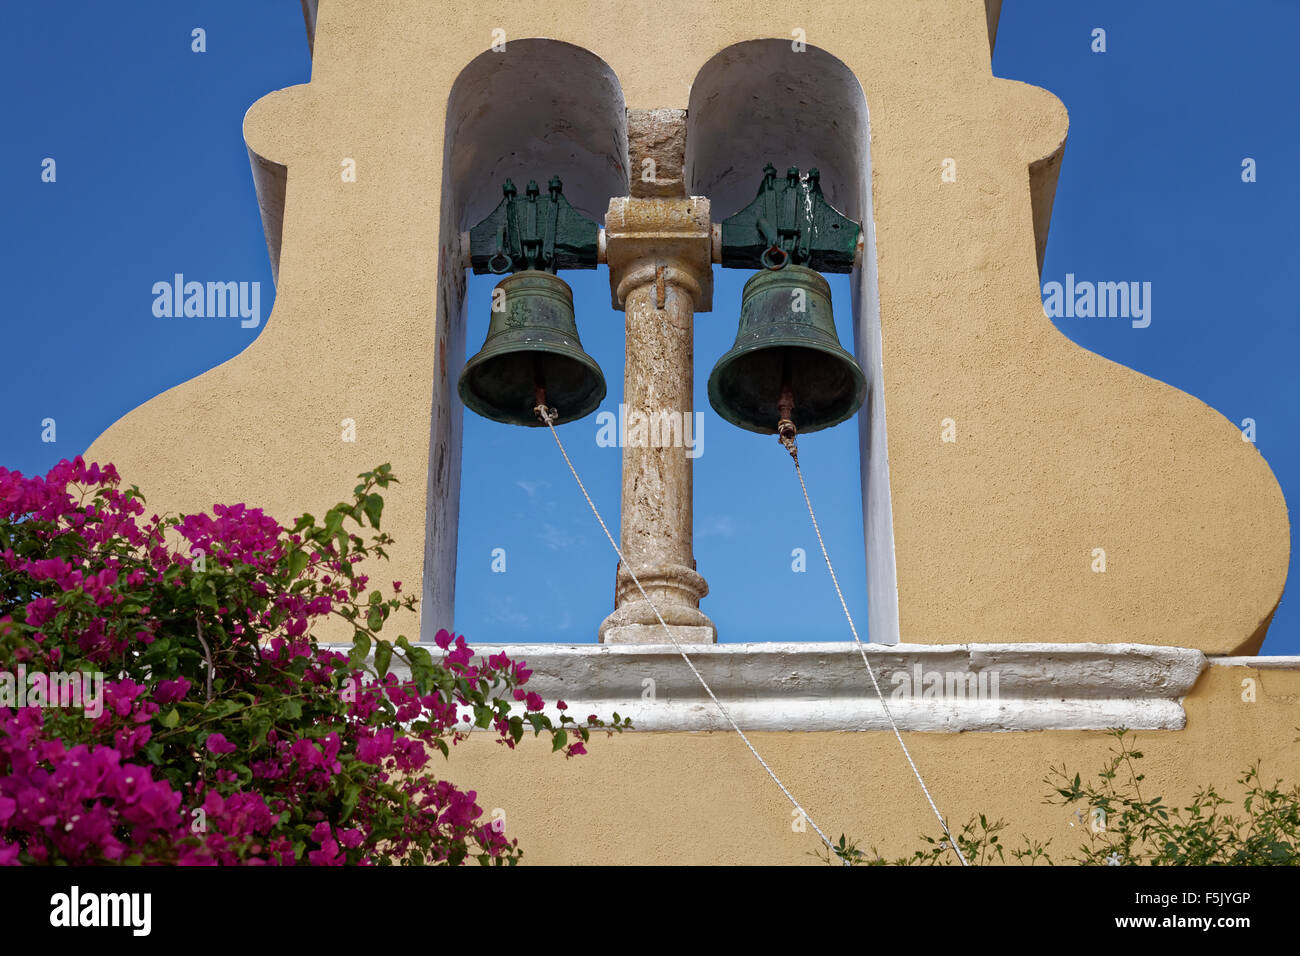 Le campane della torre campanaria, monastero di Panagia Theotokos tis Paleokastritsas o Panagia Theotokos, Paleokastritsa, Corfù Foto Stock